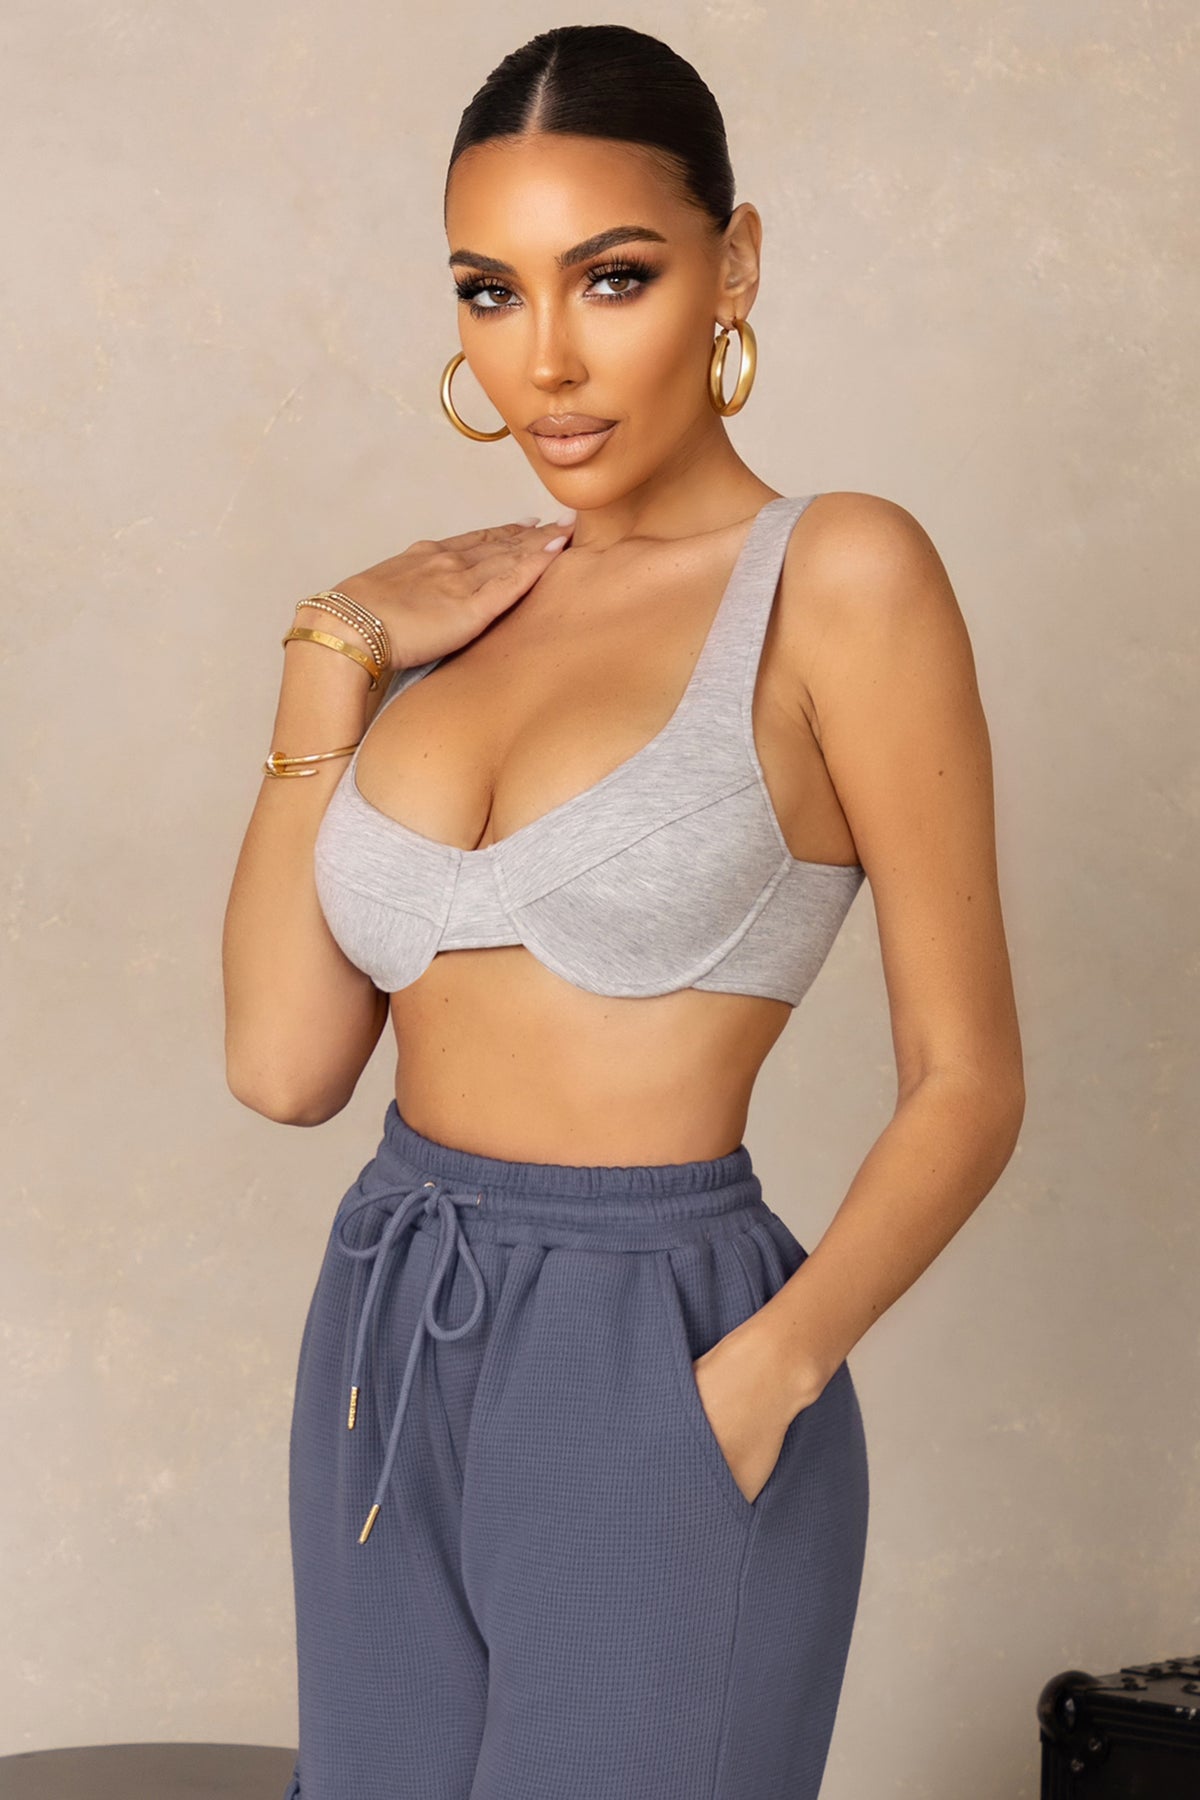 Kylie Long Sleeve Embellished Crop Top – honey